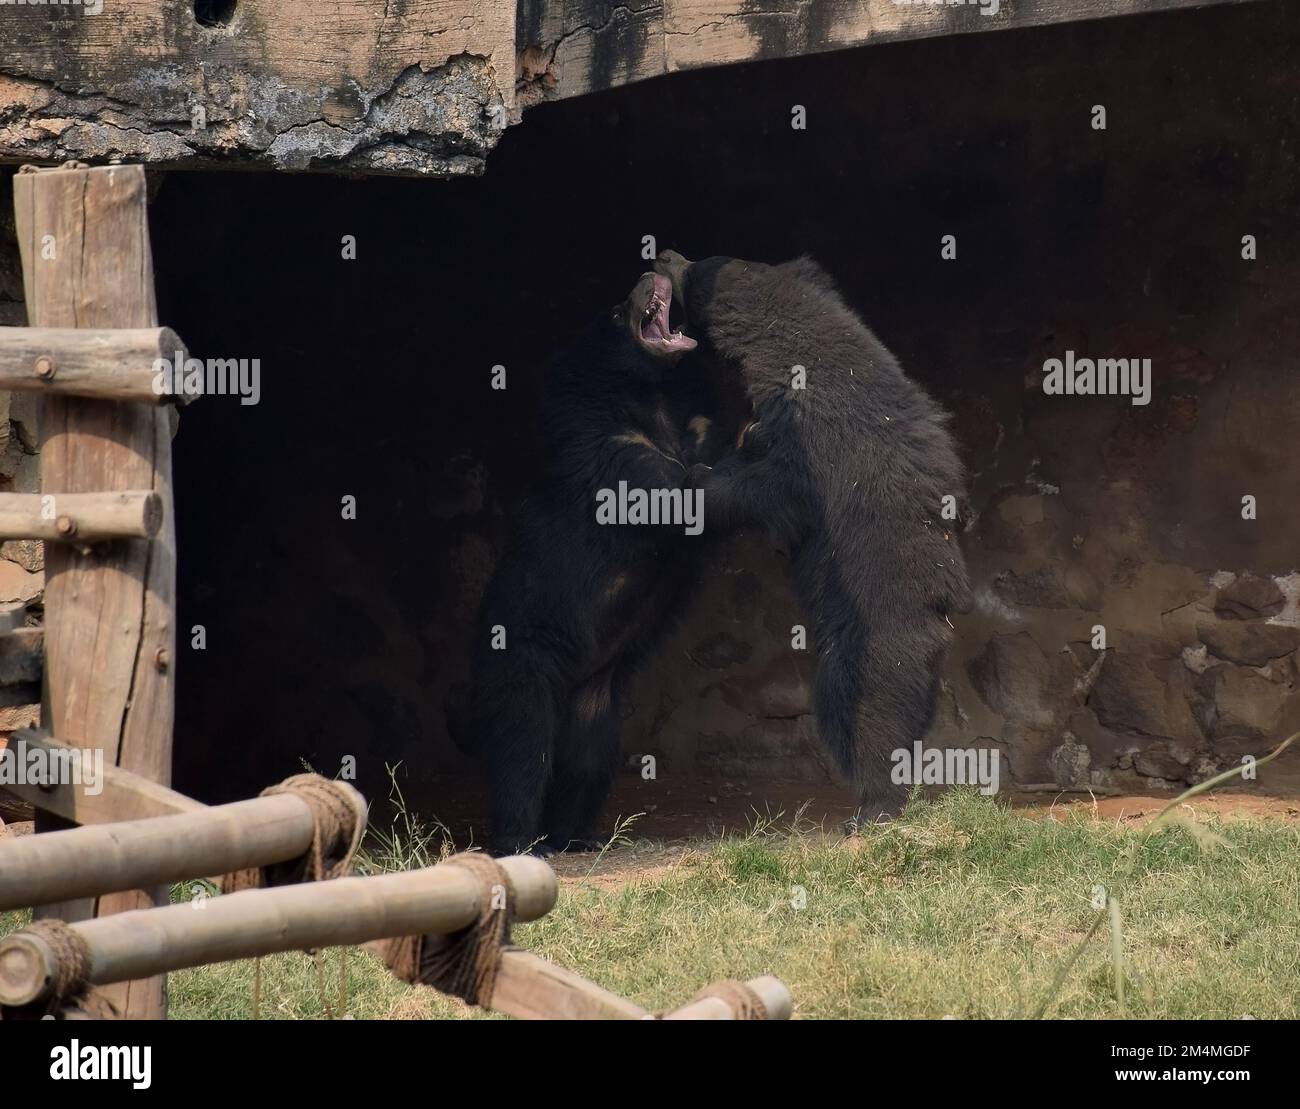 Due orsi selvatici che combattono l'uno con l'altro in uno zoo in India - fotografia naturalistica Foto Stock